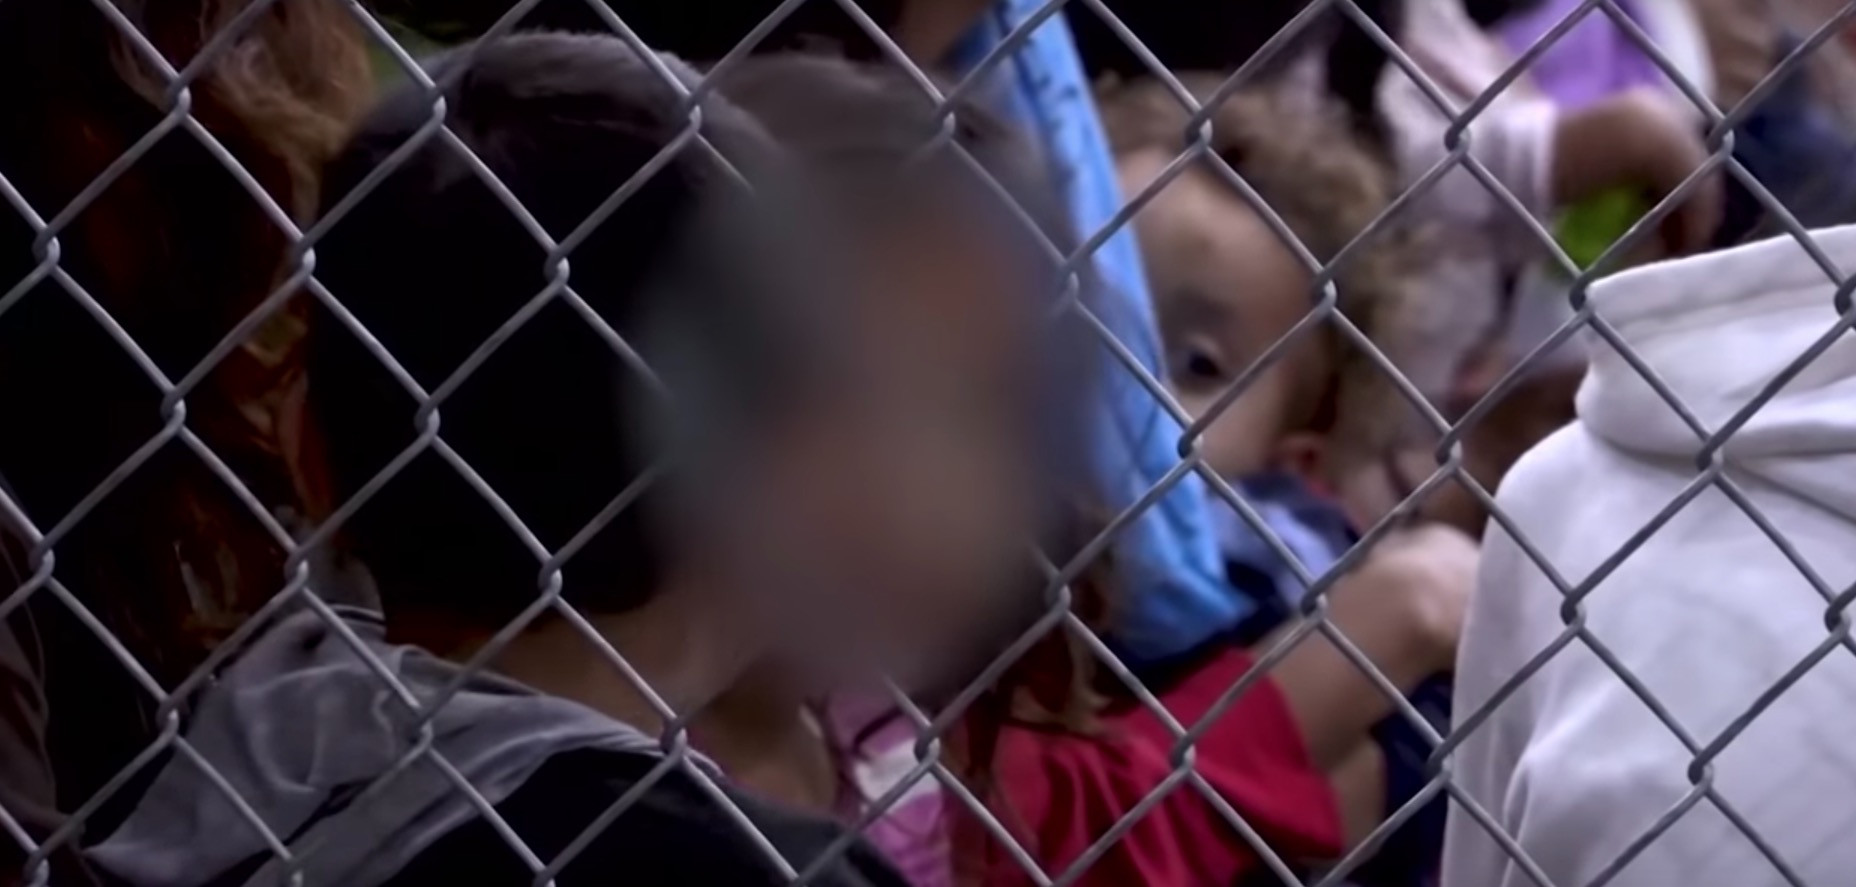 Κτηνωδία: Παιδιά σε αμερικανικά κλουβιά στα σύνορα με το Μεξικό – Έντονες αντιδράσεις στο εσωτερικό των ΗΠΑ [Βίντεο]